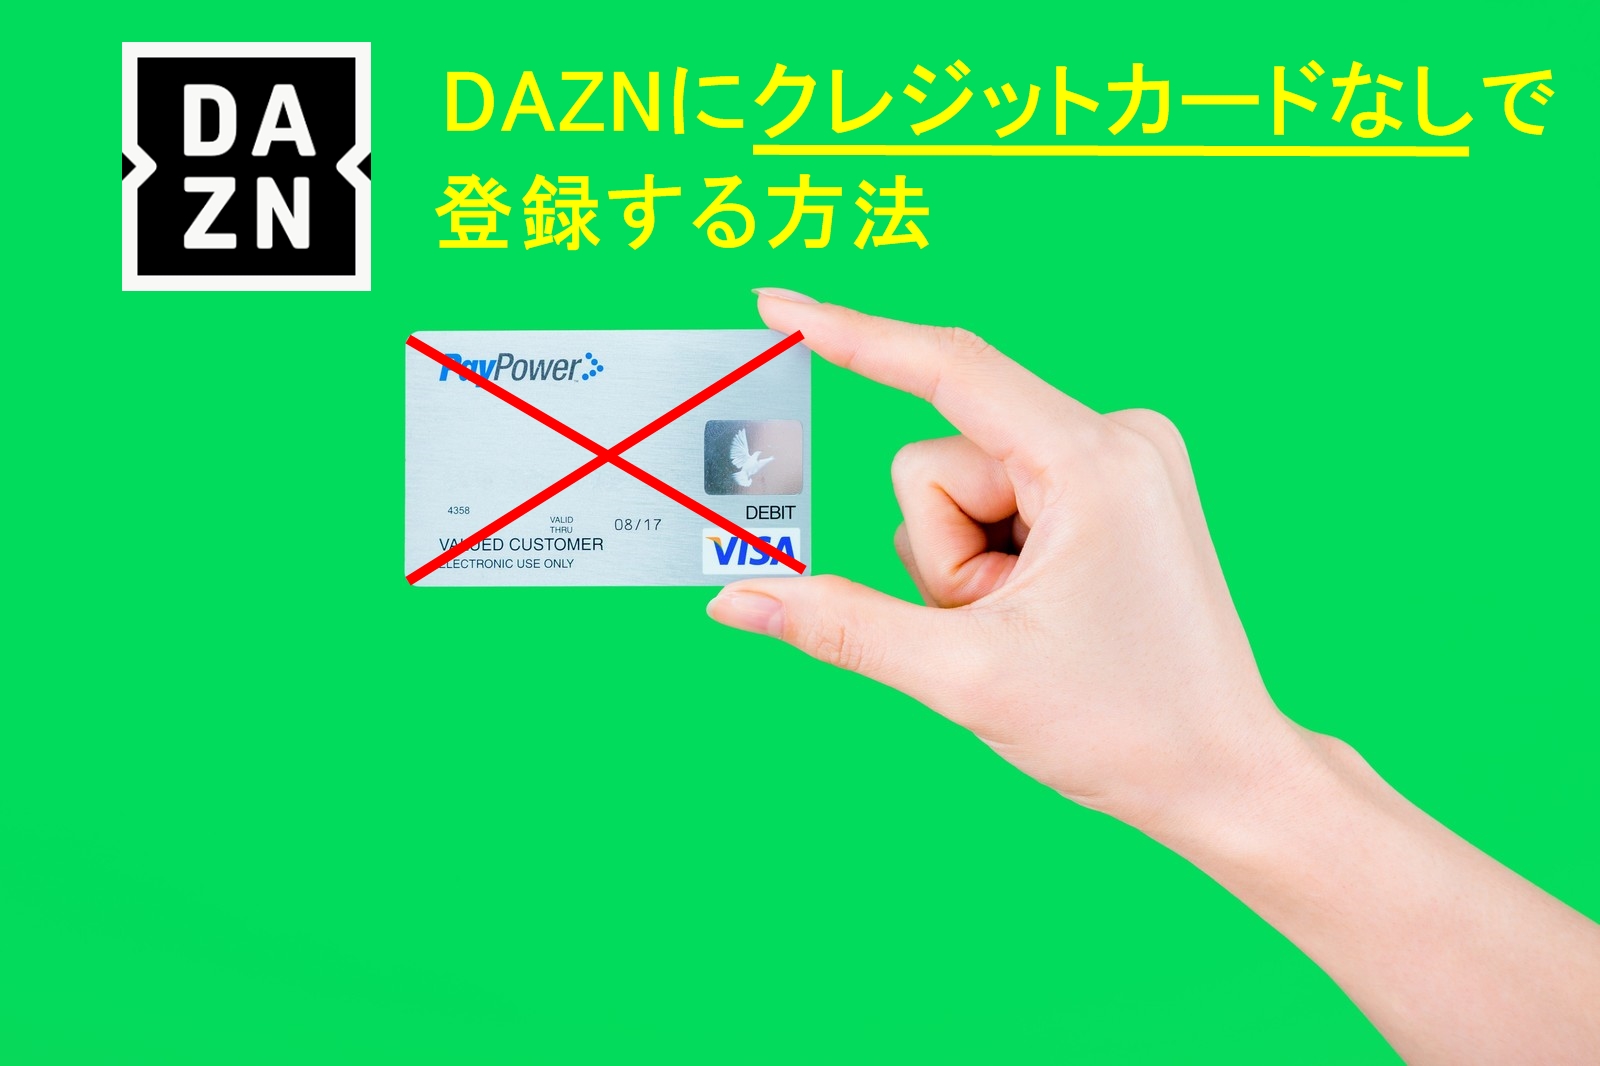 Daznはクレジットカードがない人でも登録できる カードなしで登録する方法